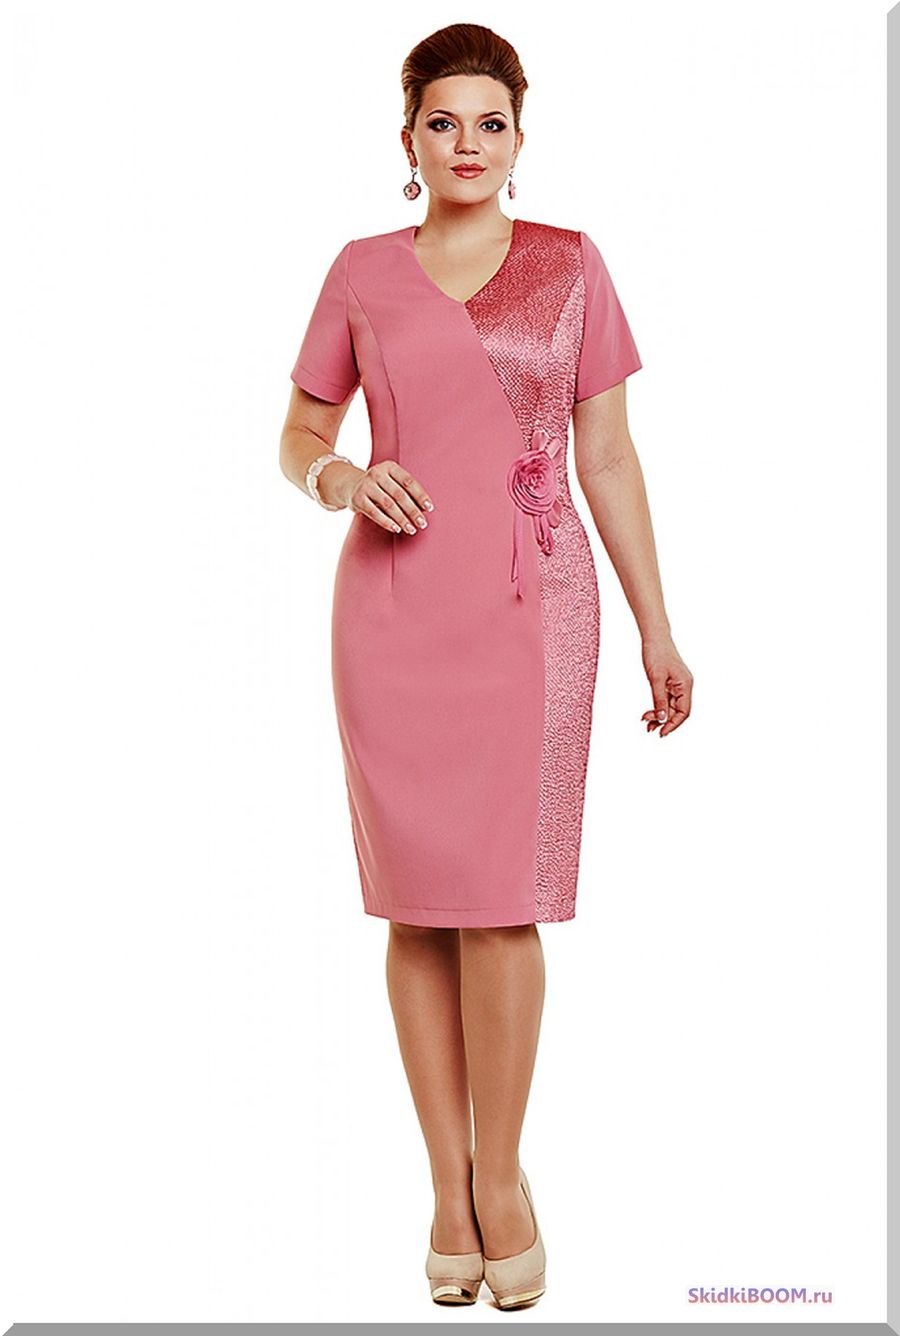 Модные платья для женщин после 50 лет - розовое